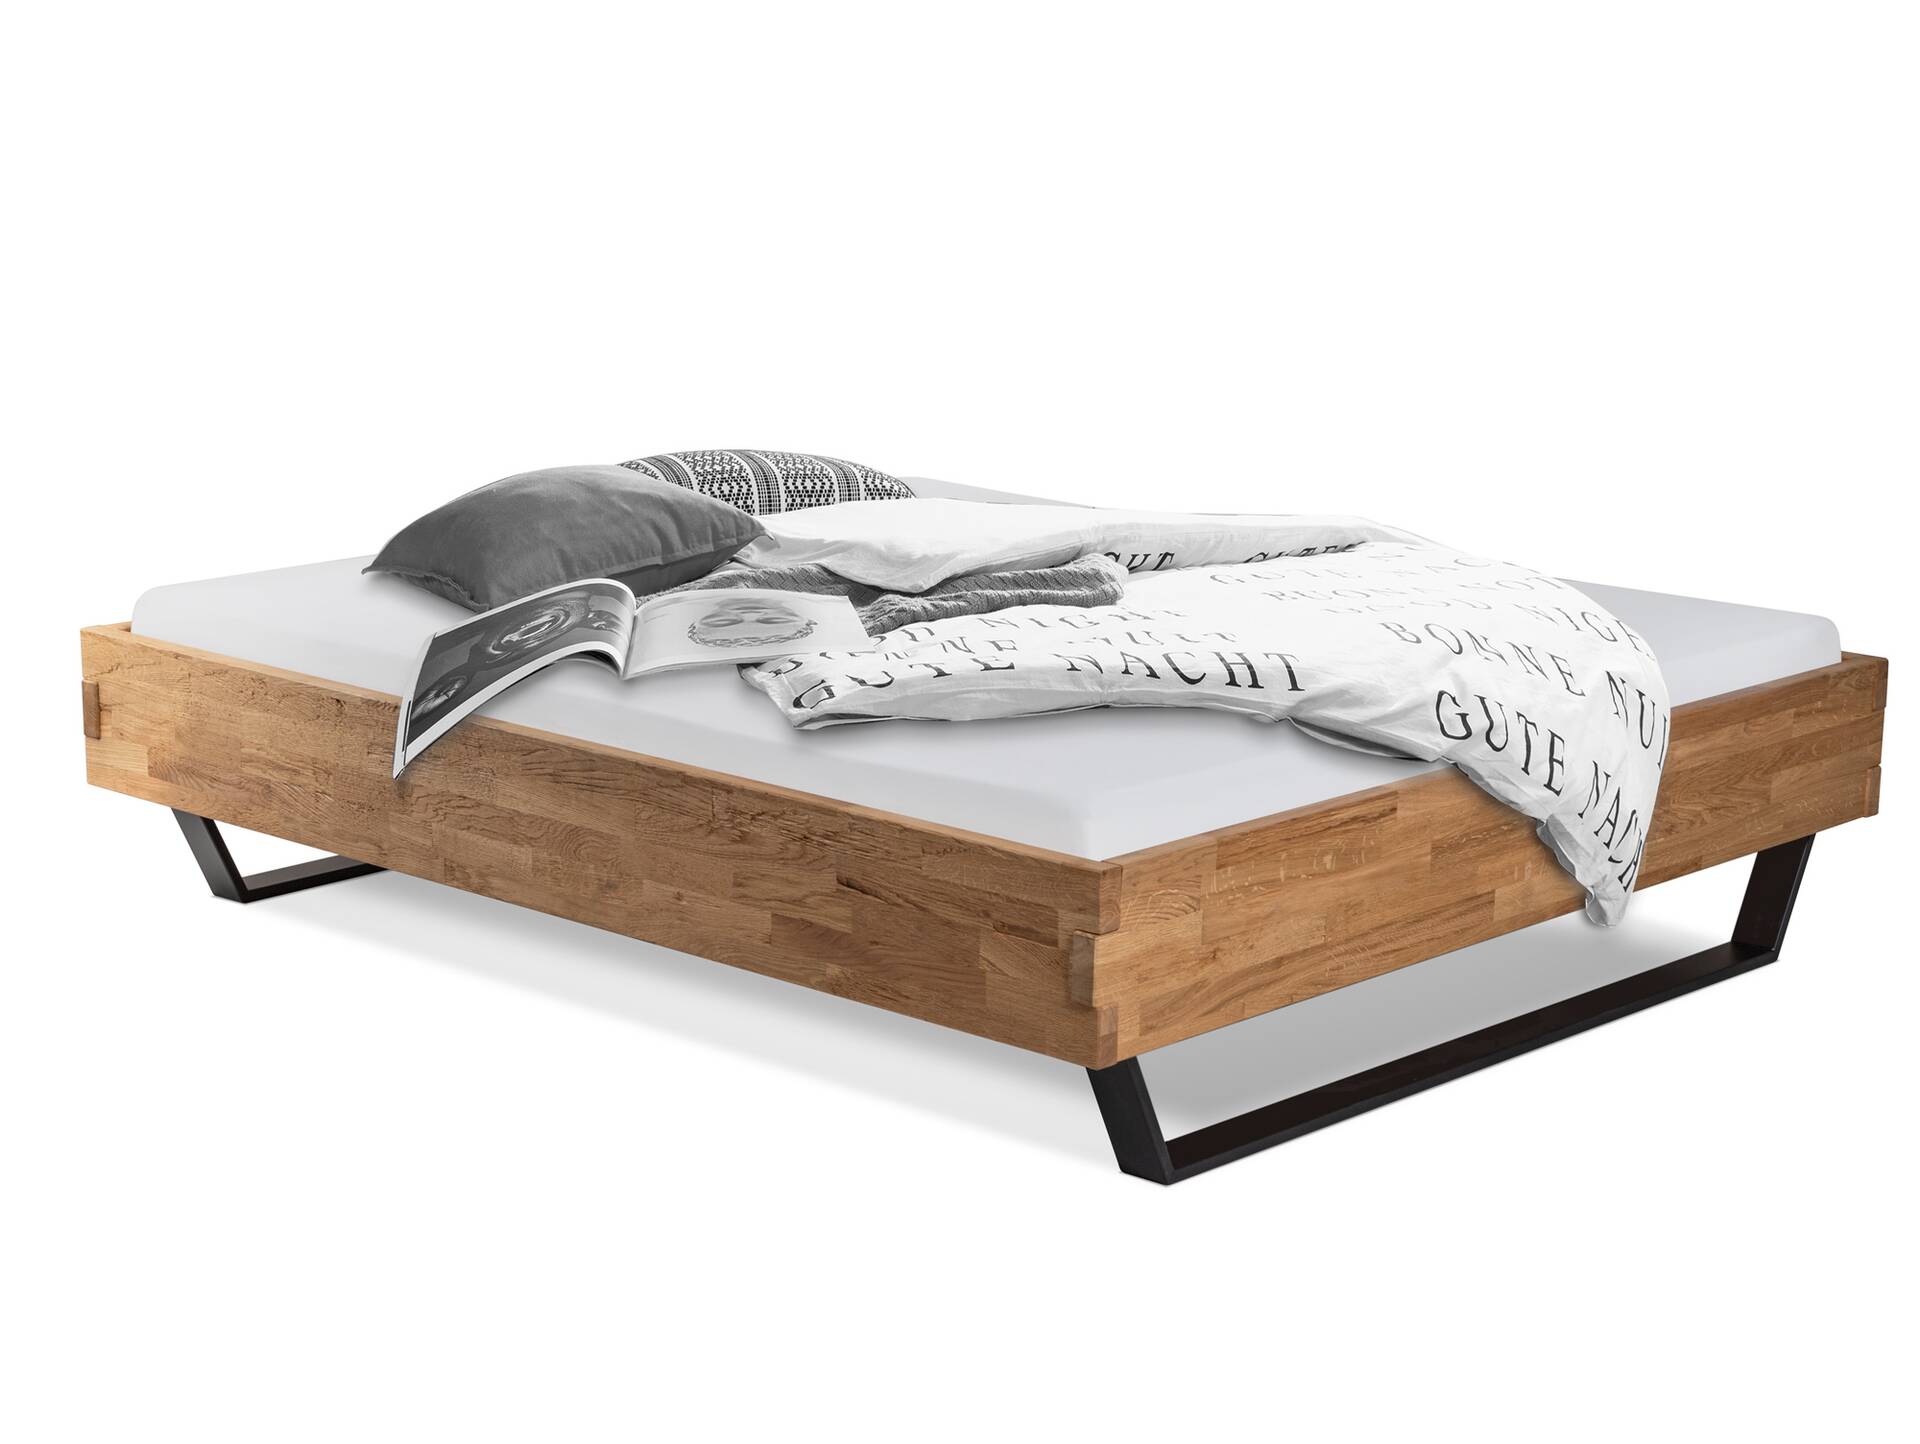 CORDINO Kufenbett aus Eiche, Material Massivholz, ohne Kopfteil 90 x 200 cm | Eiche unbehandelt | gehackt